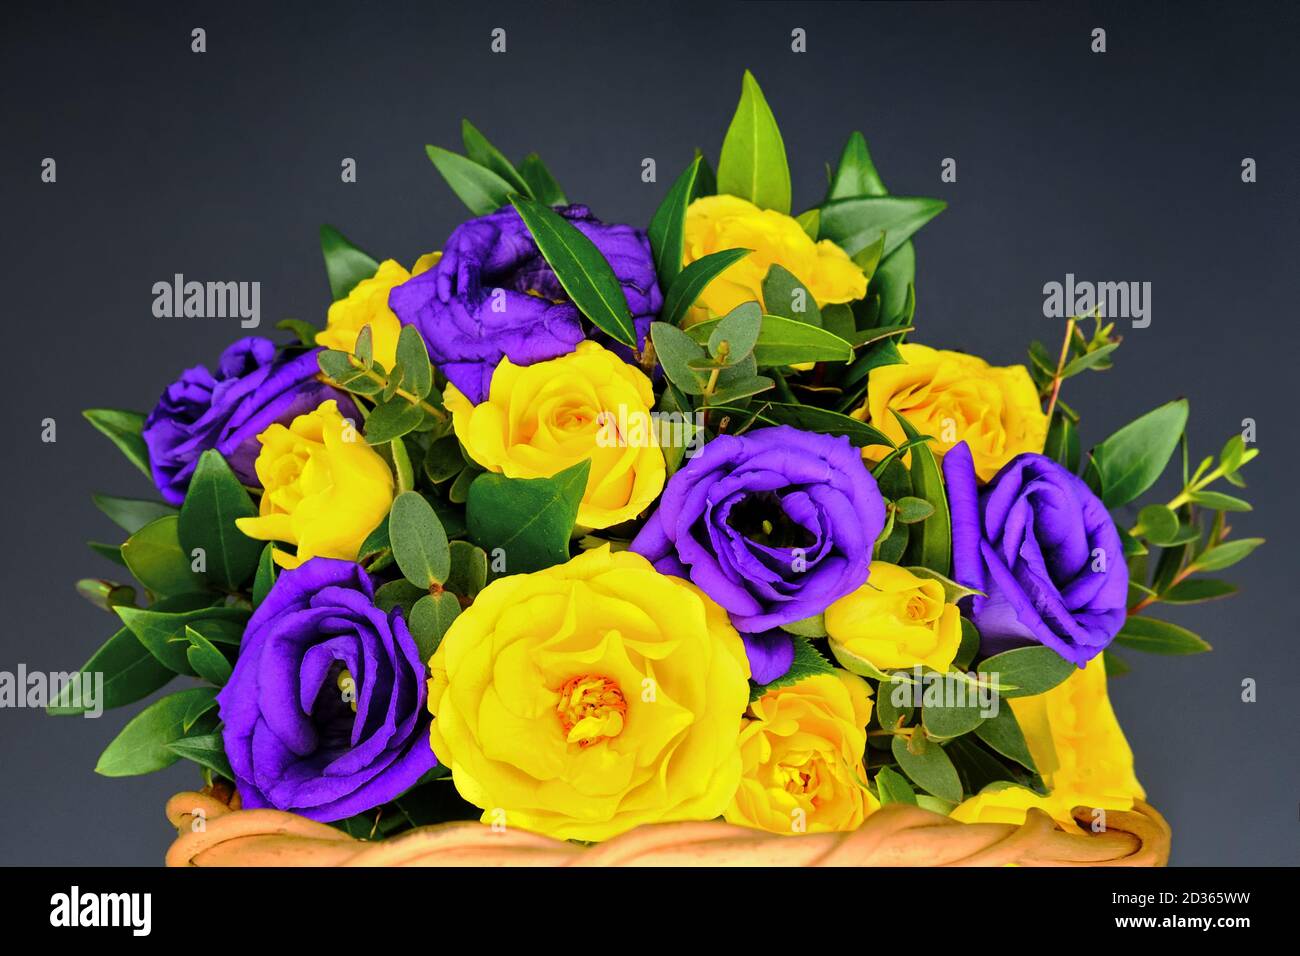 Bouquet de roses sur fond noir. Fleurs jaunes et violettes dans un panier  en osier. Les roses avec des feuilles vertes sont recueillies dans la  composition. Magnifique Photo Stock - Alamy